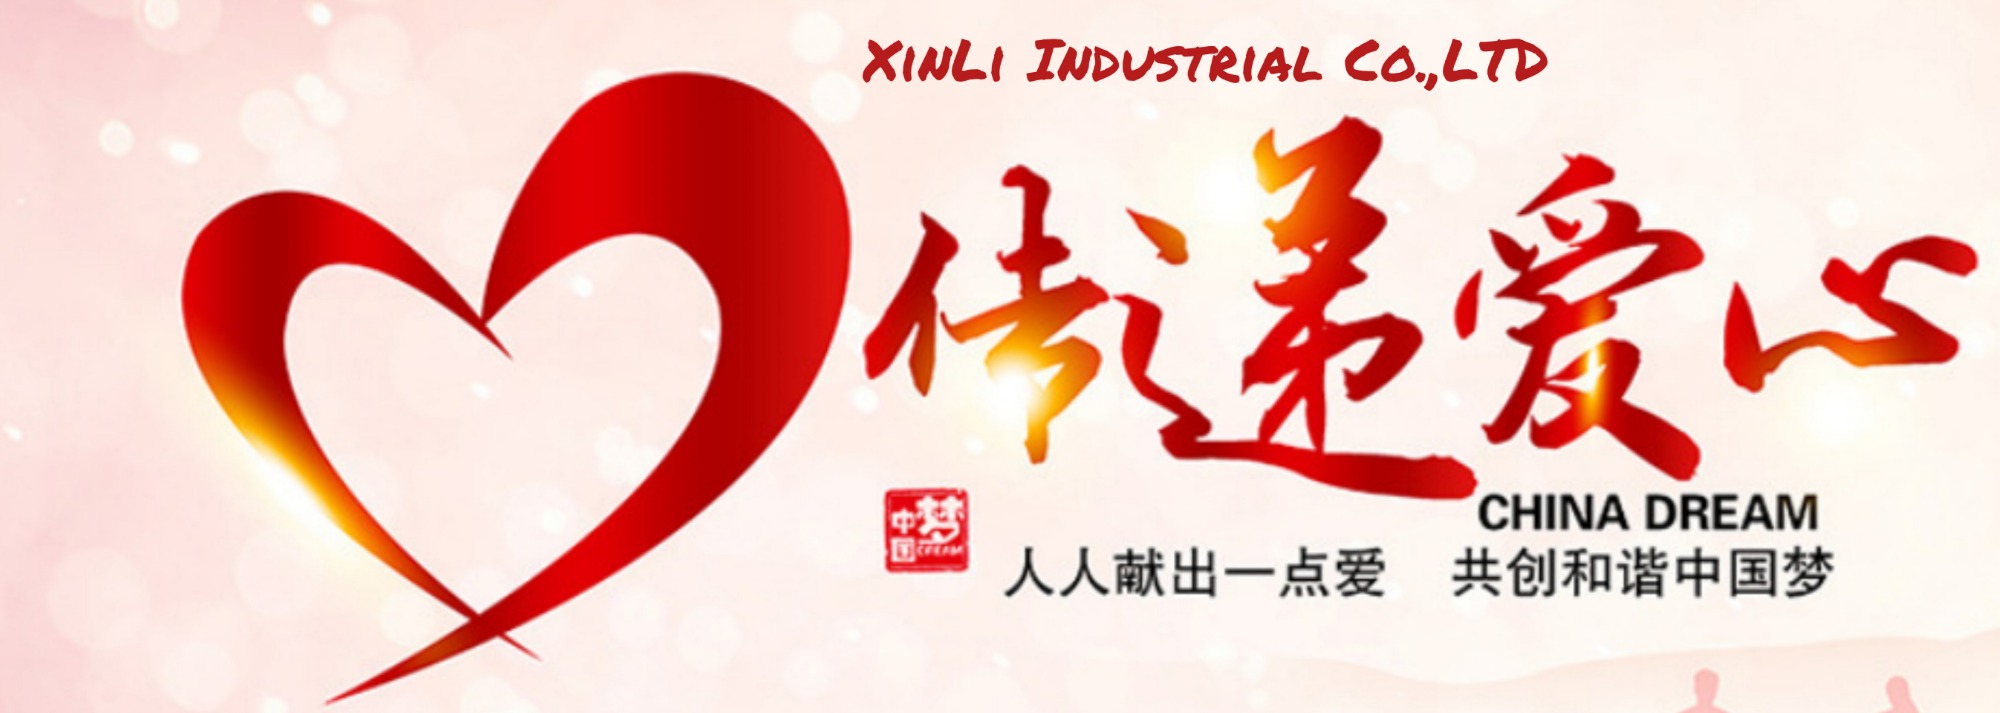 XinLi Charity Hilfe